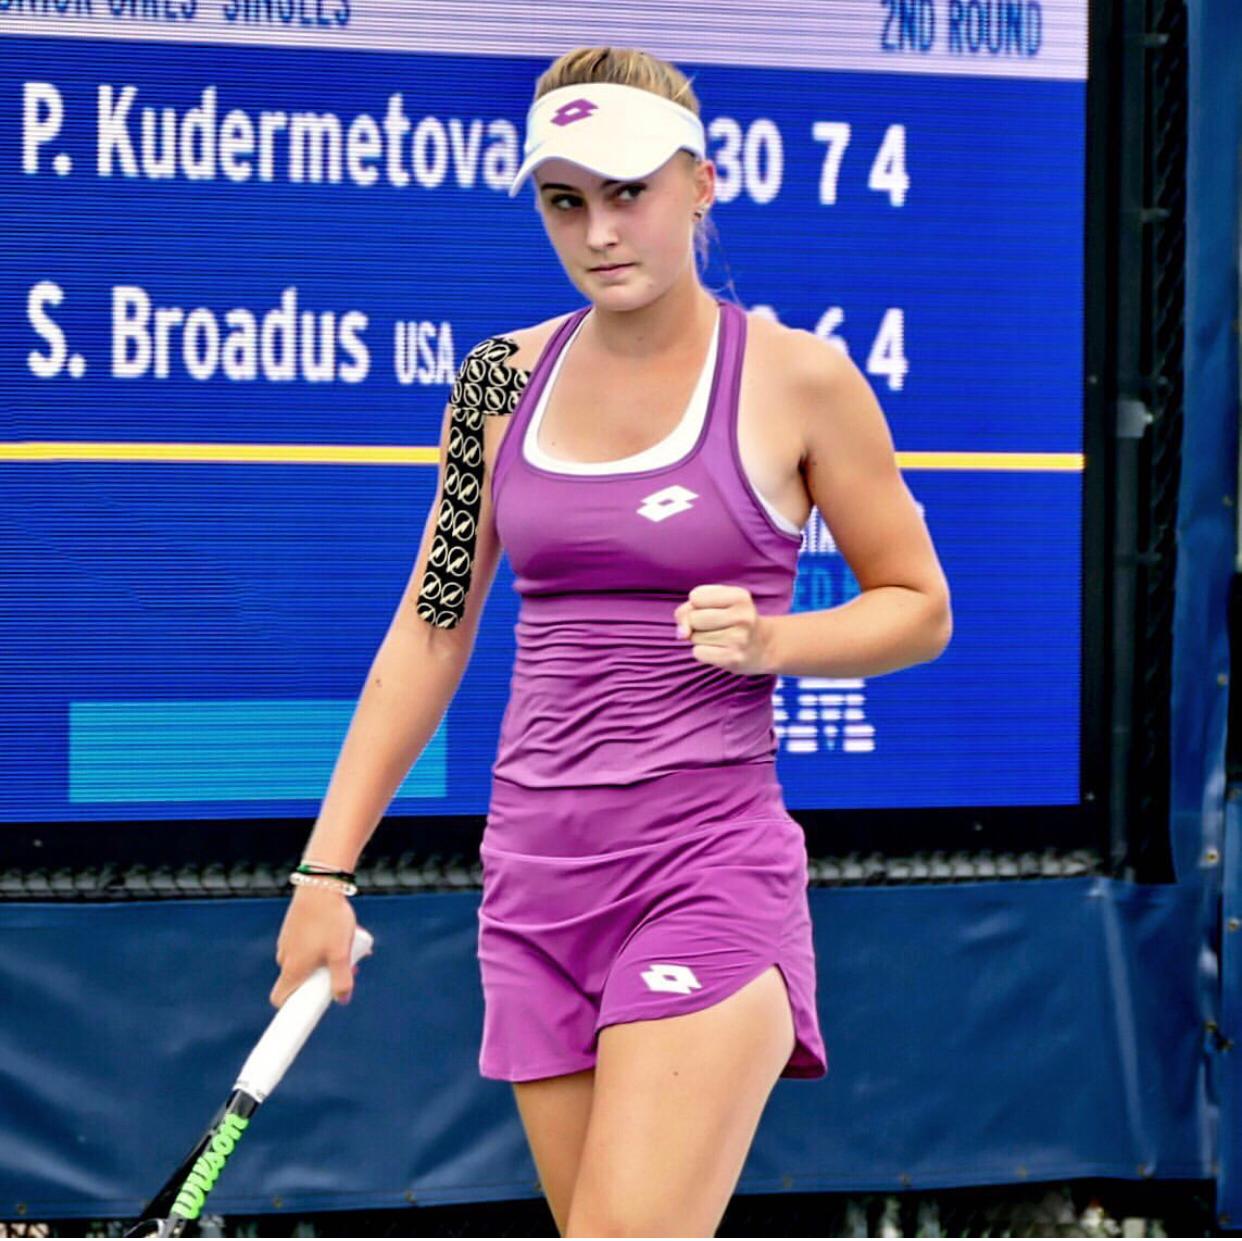 Полина Кудерметова вышла в третий круг открытого чемпионата США по теннису среди юниоров